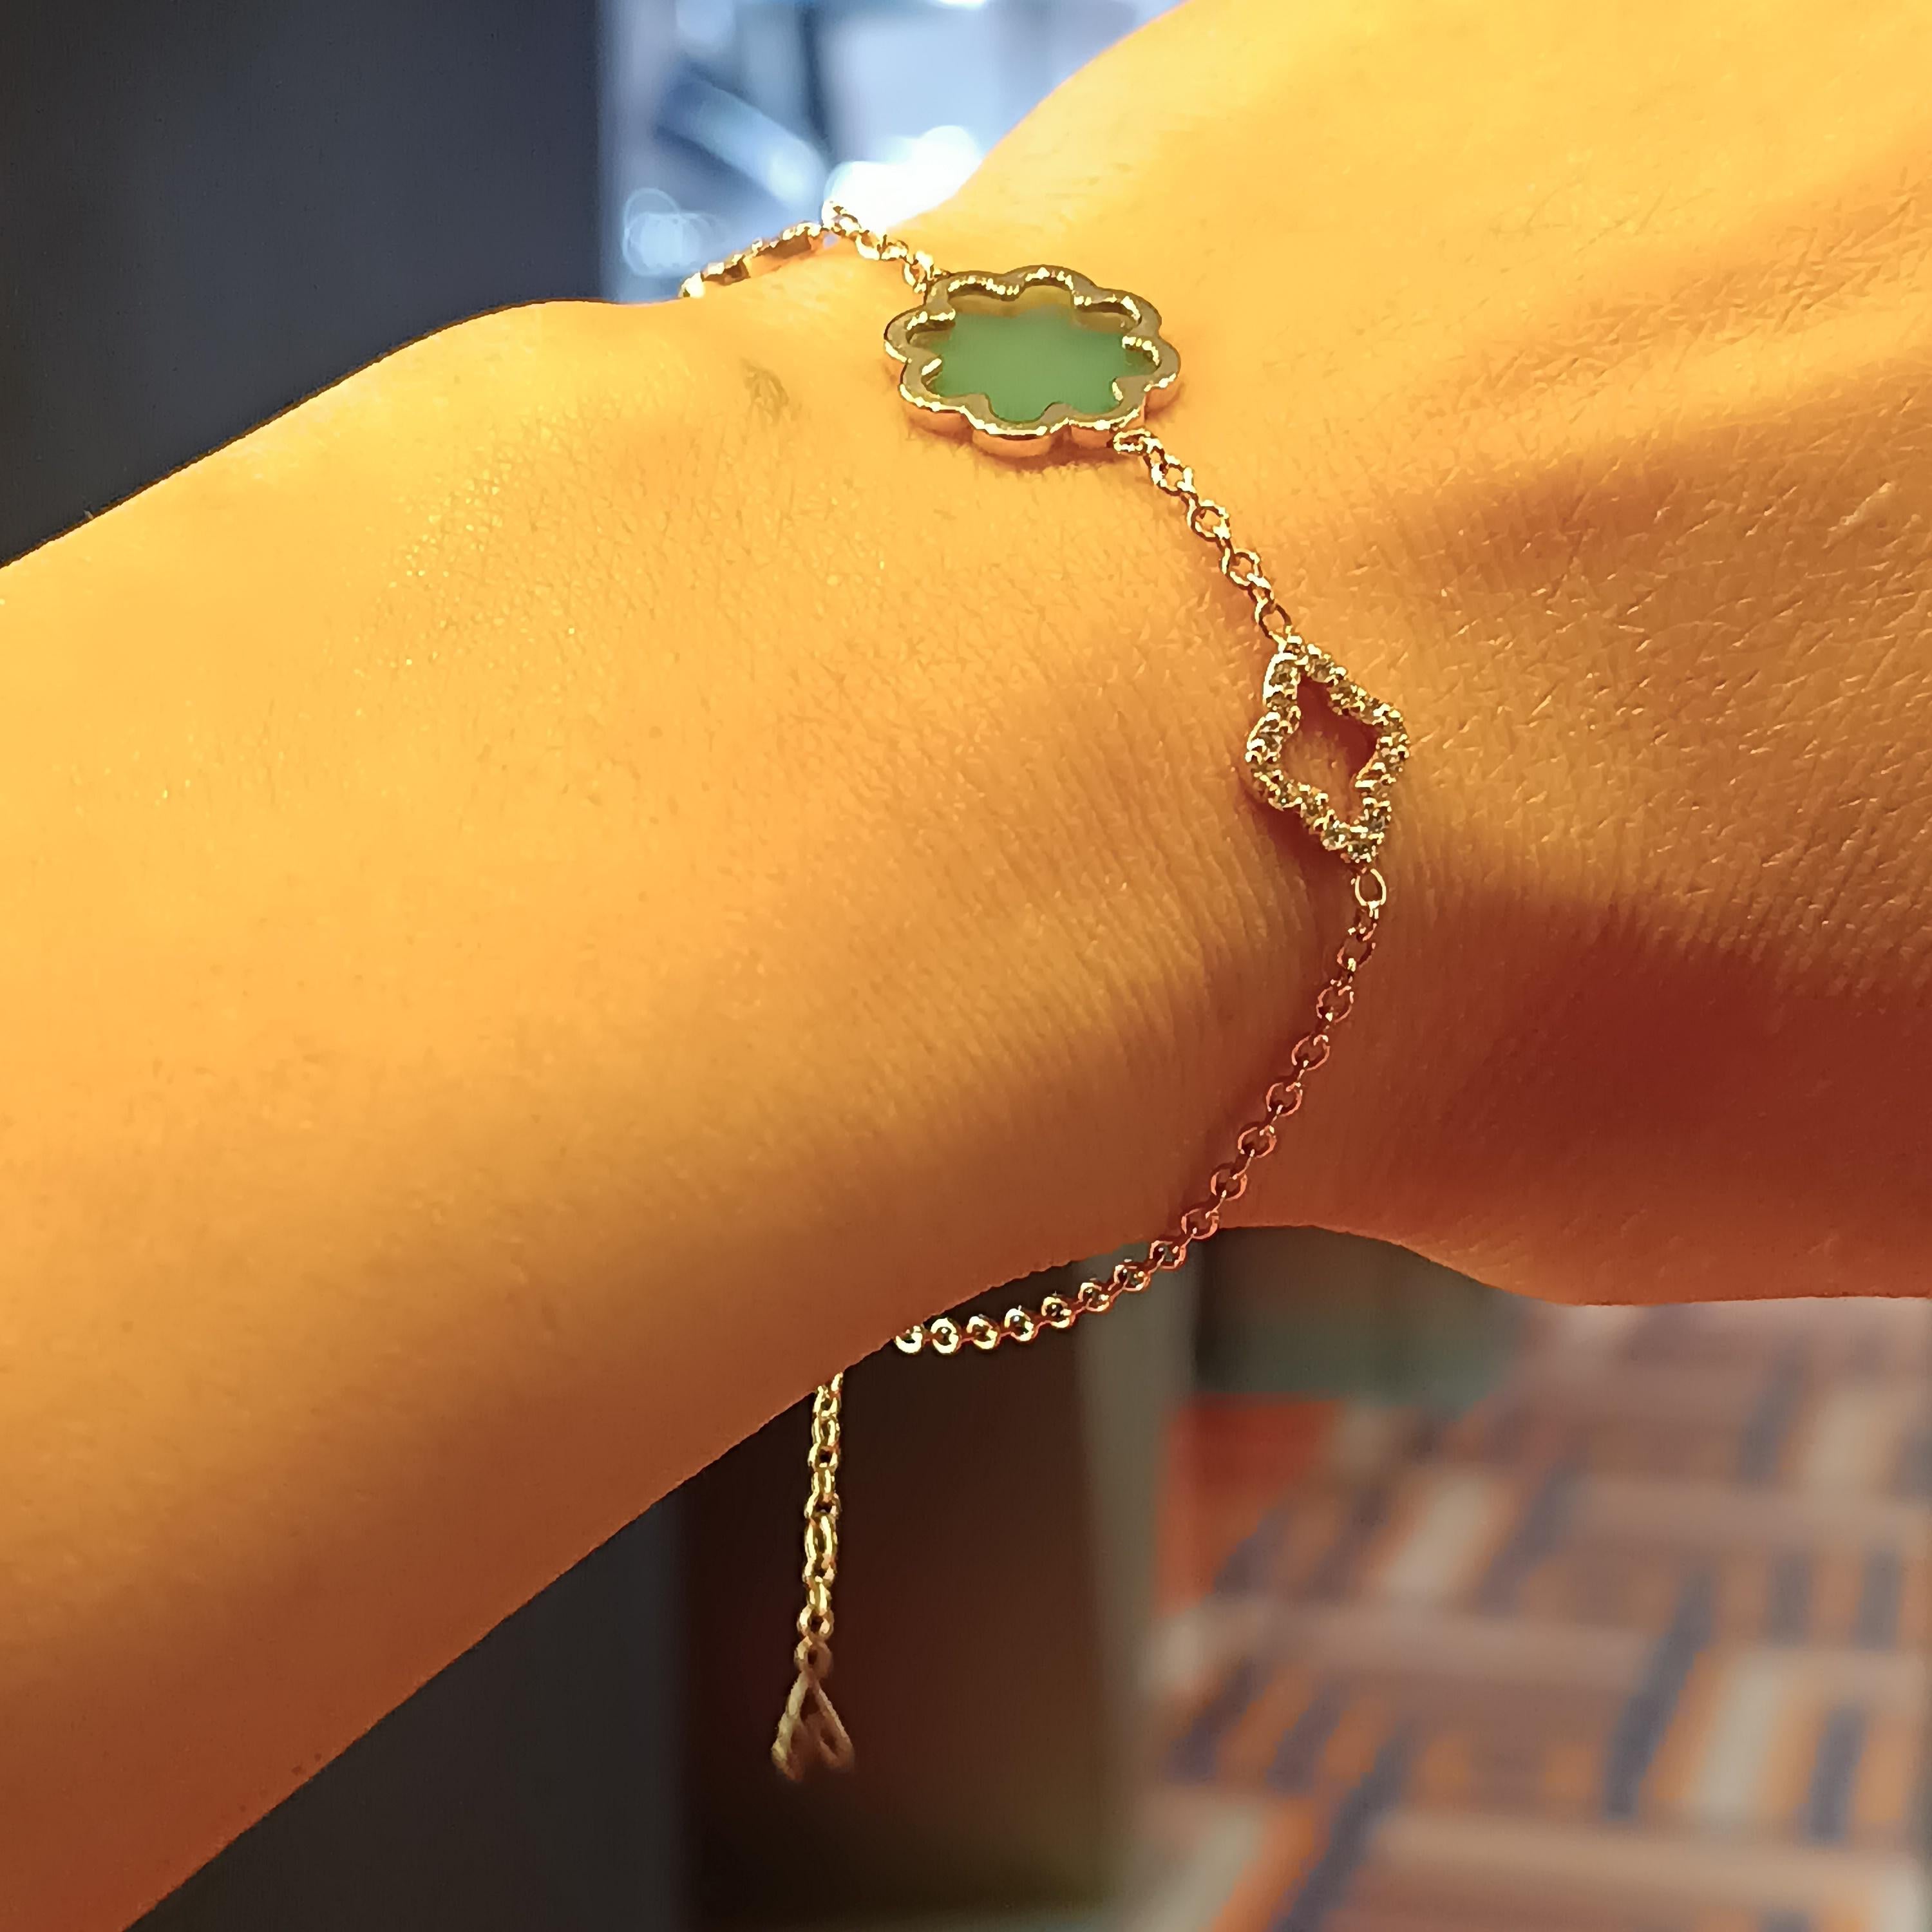 Prächtige und helle VS G Farbe Diamant grün Achat  Armband aus 18 Karat Roségold Gewicht: 3,93
Schlichtheit in Vollendung, einer unserer meistverkauften Artikel. Die Größe des Armbands beginnt bei 17 cm und ist bis zu 19 cm verstellbar.
Jedes Stück